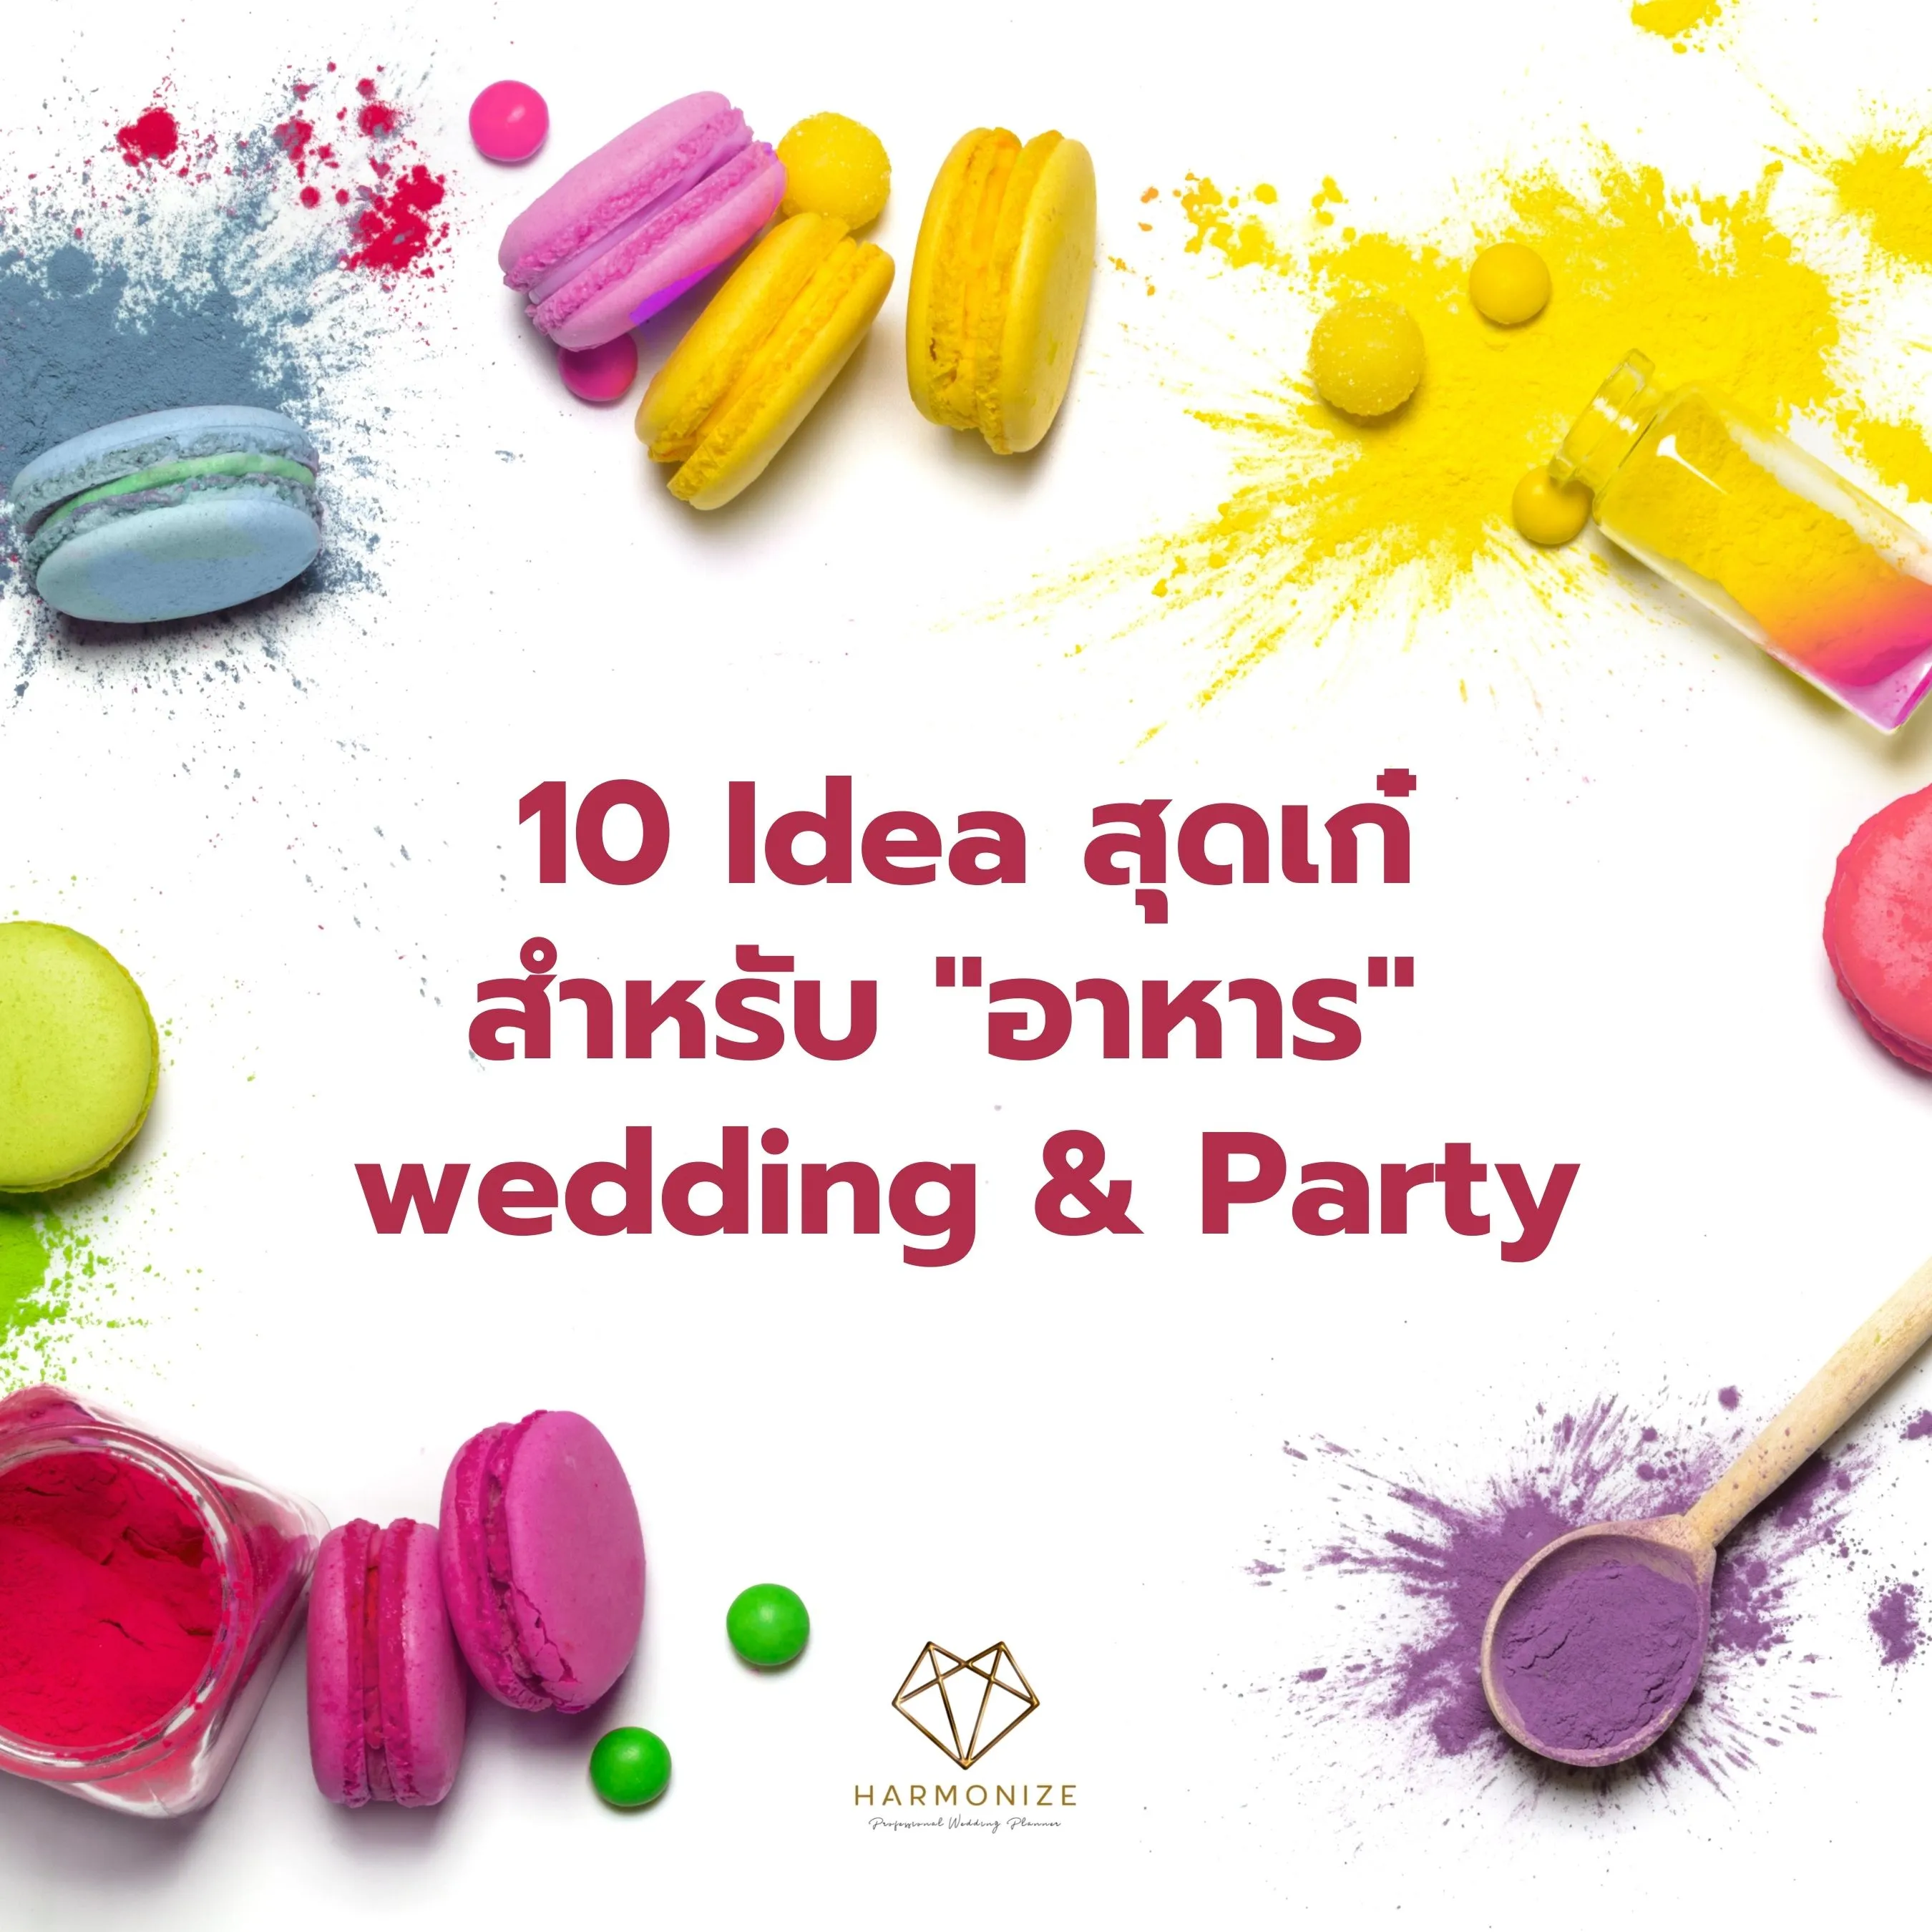 10 ไอเดียสุดเก๋ สำหรับ "อาหาร" Wedding & Party